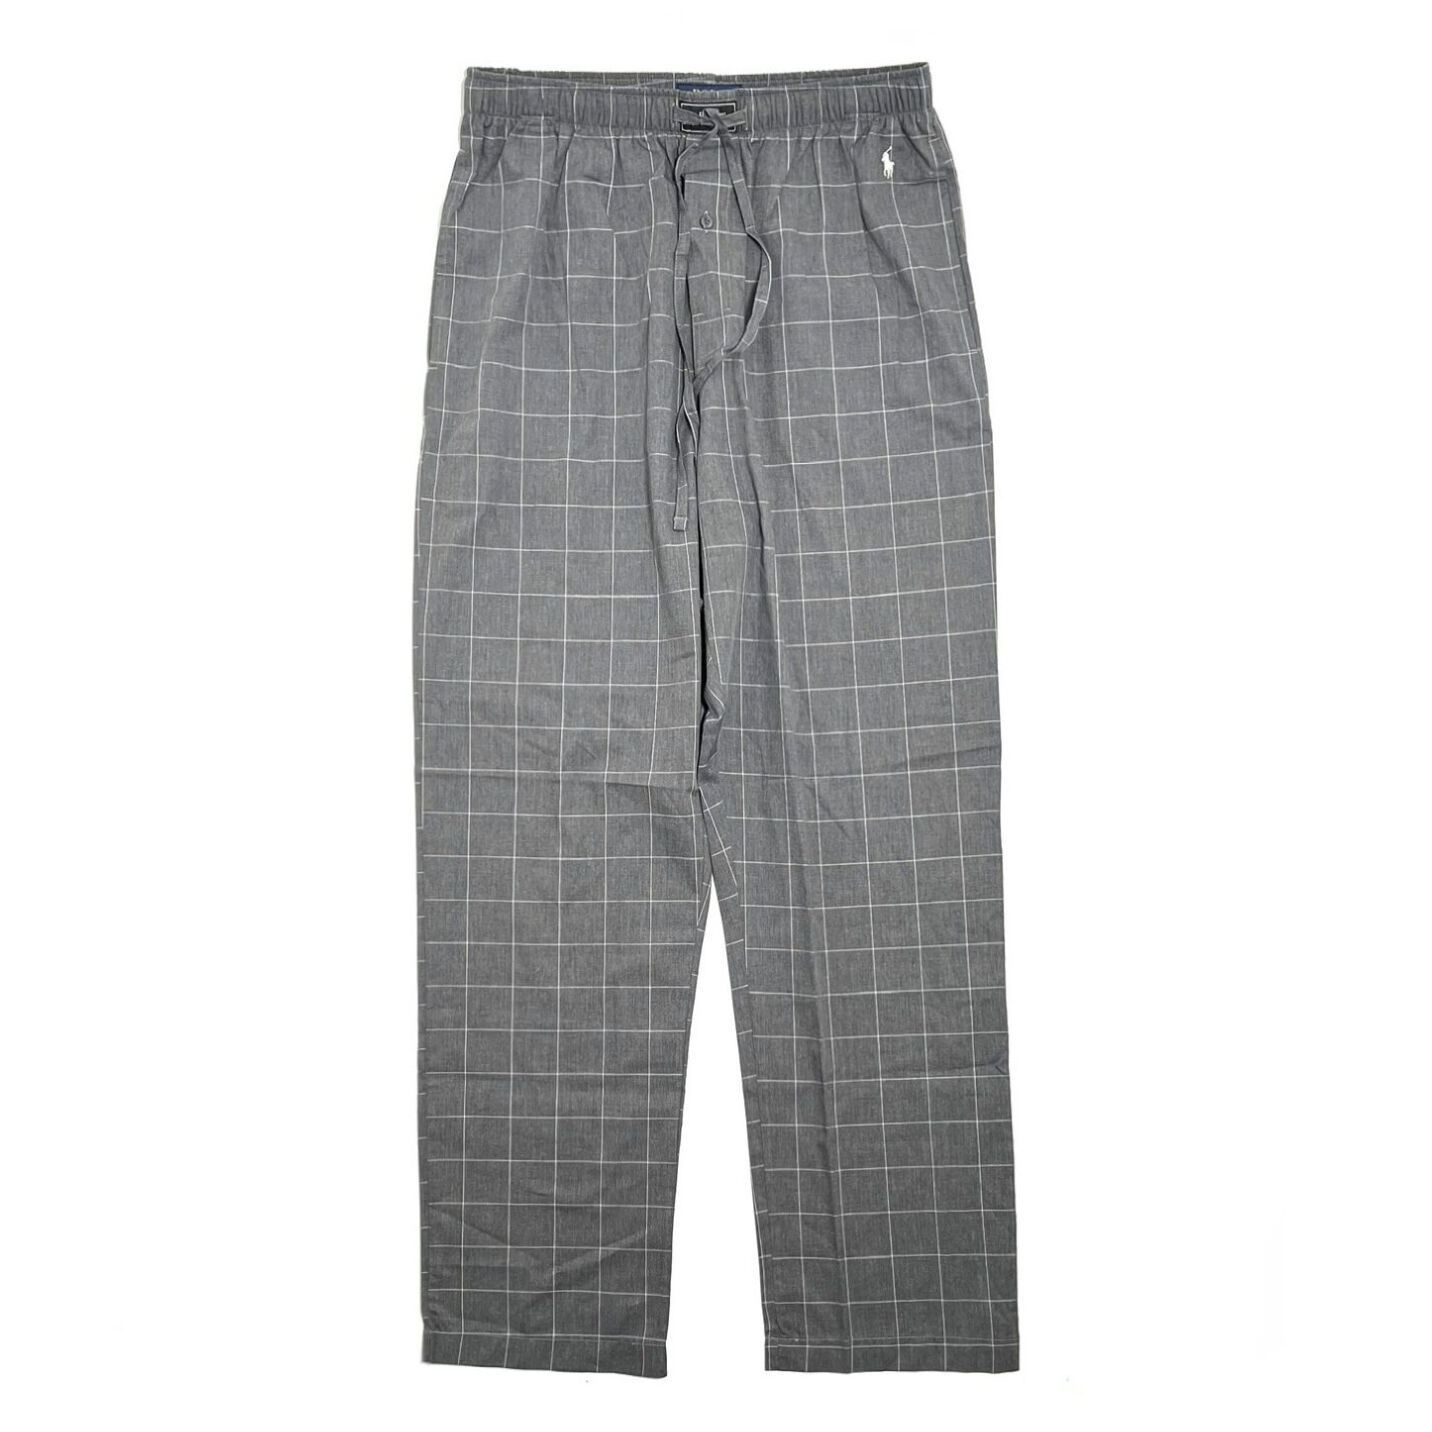 画像1: Polo Ralph Lauren Woven Pants Grey Plaid / ポロ ラルフローレン ウーブン パジャマパンツ グレープレイド (1)